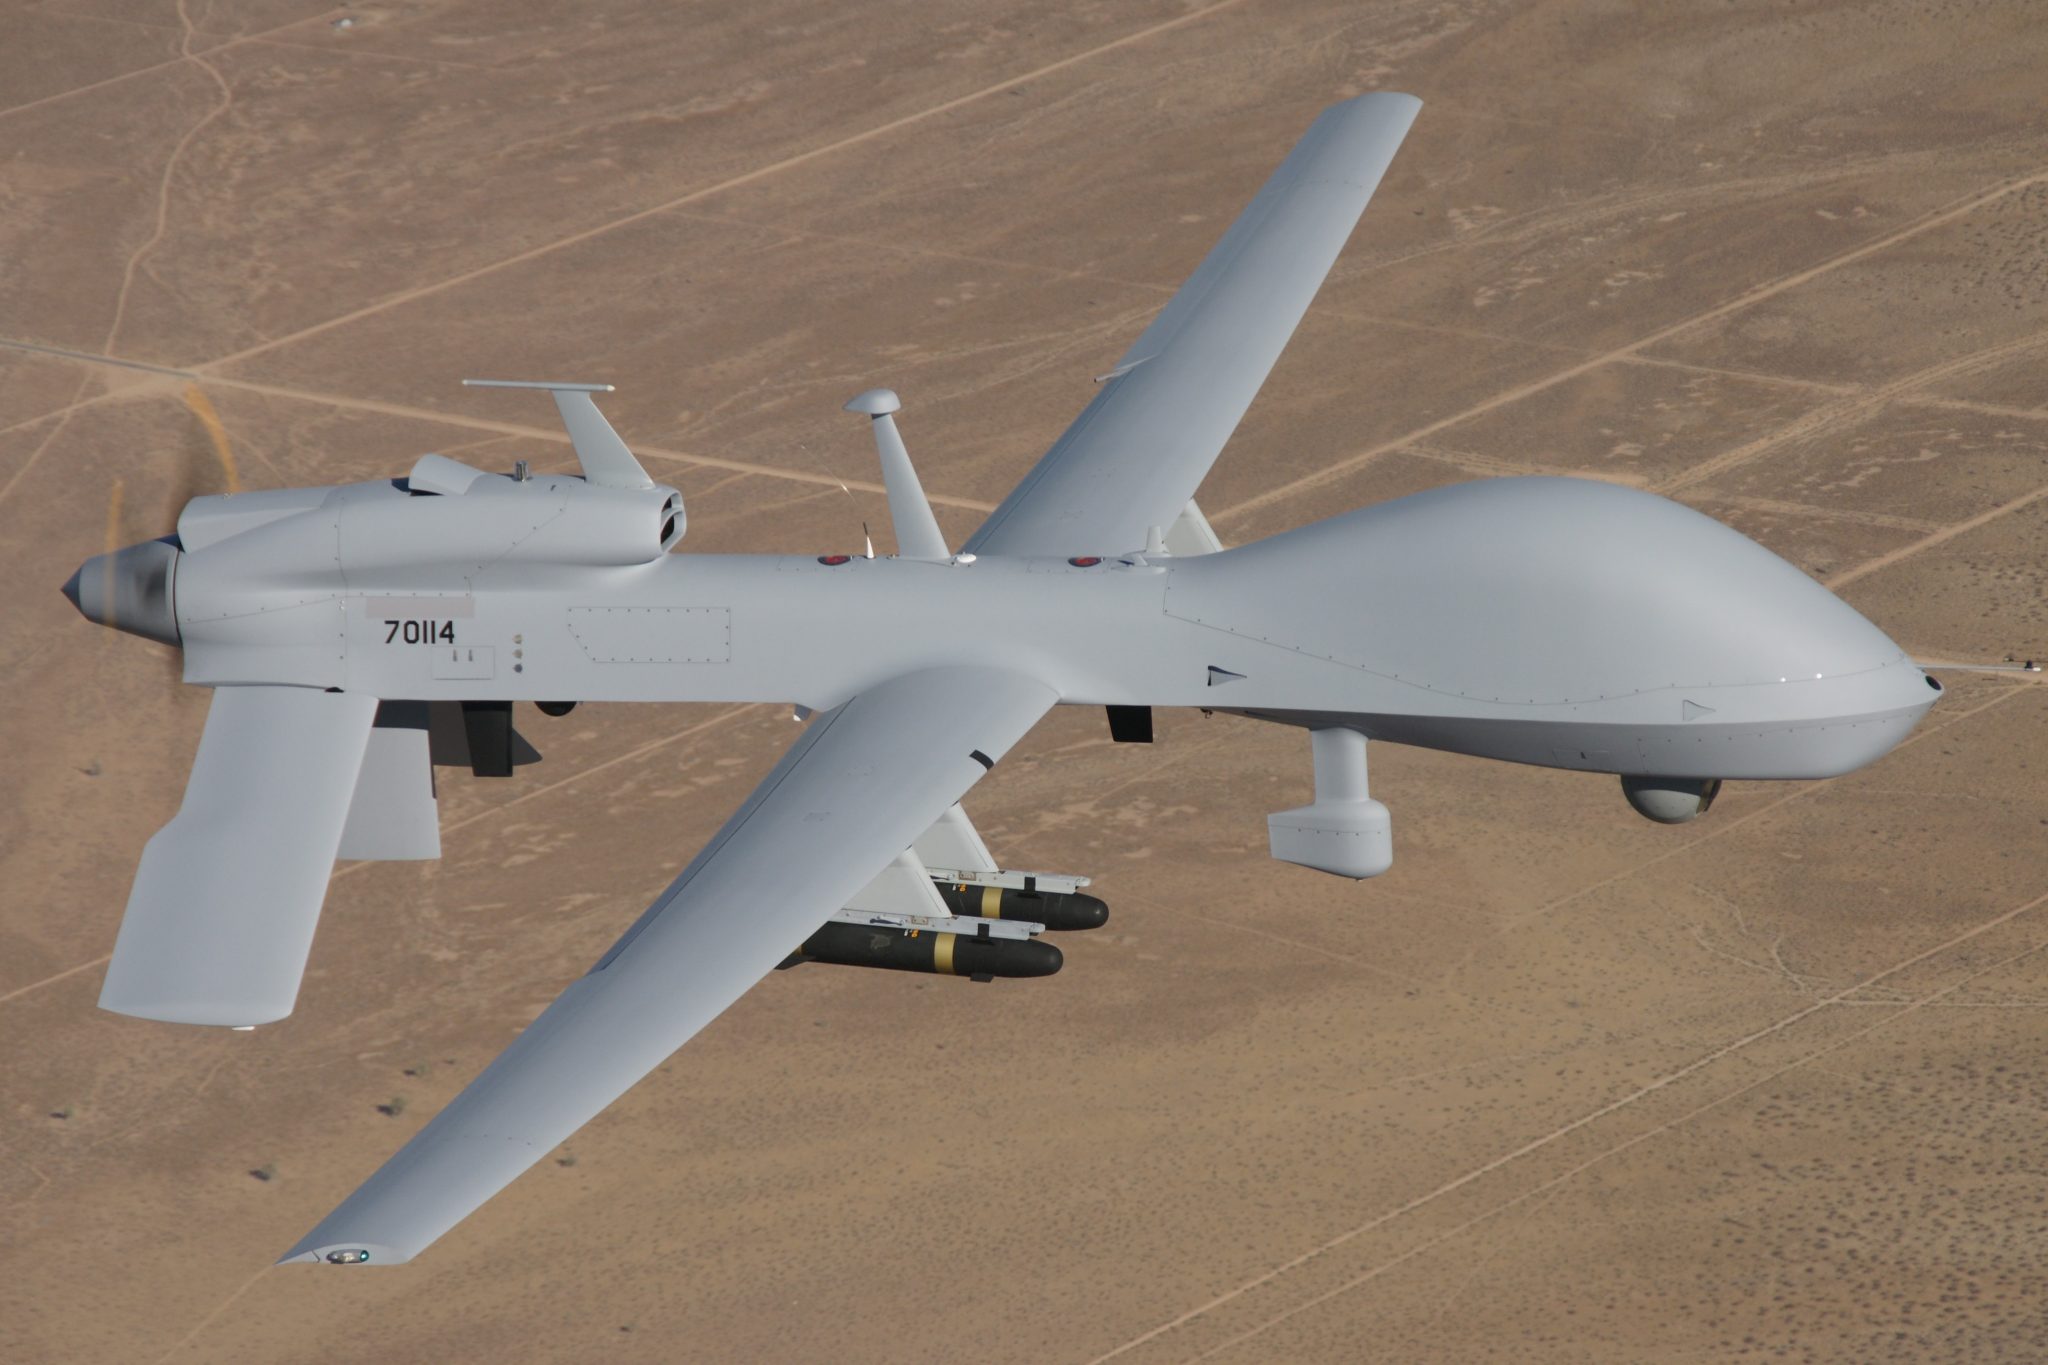 USA mogą zmodyfikować drona MQ-1C Gray Eagle, by przekazać go ukraińskim siłom zbrojnym